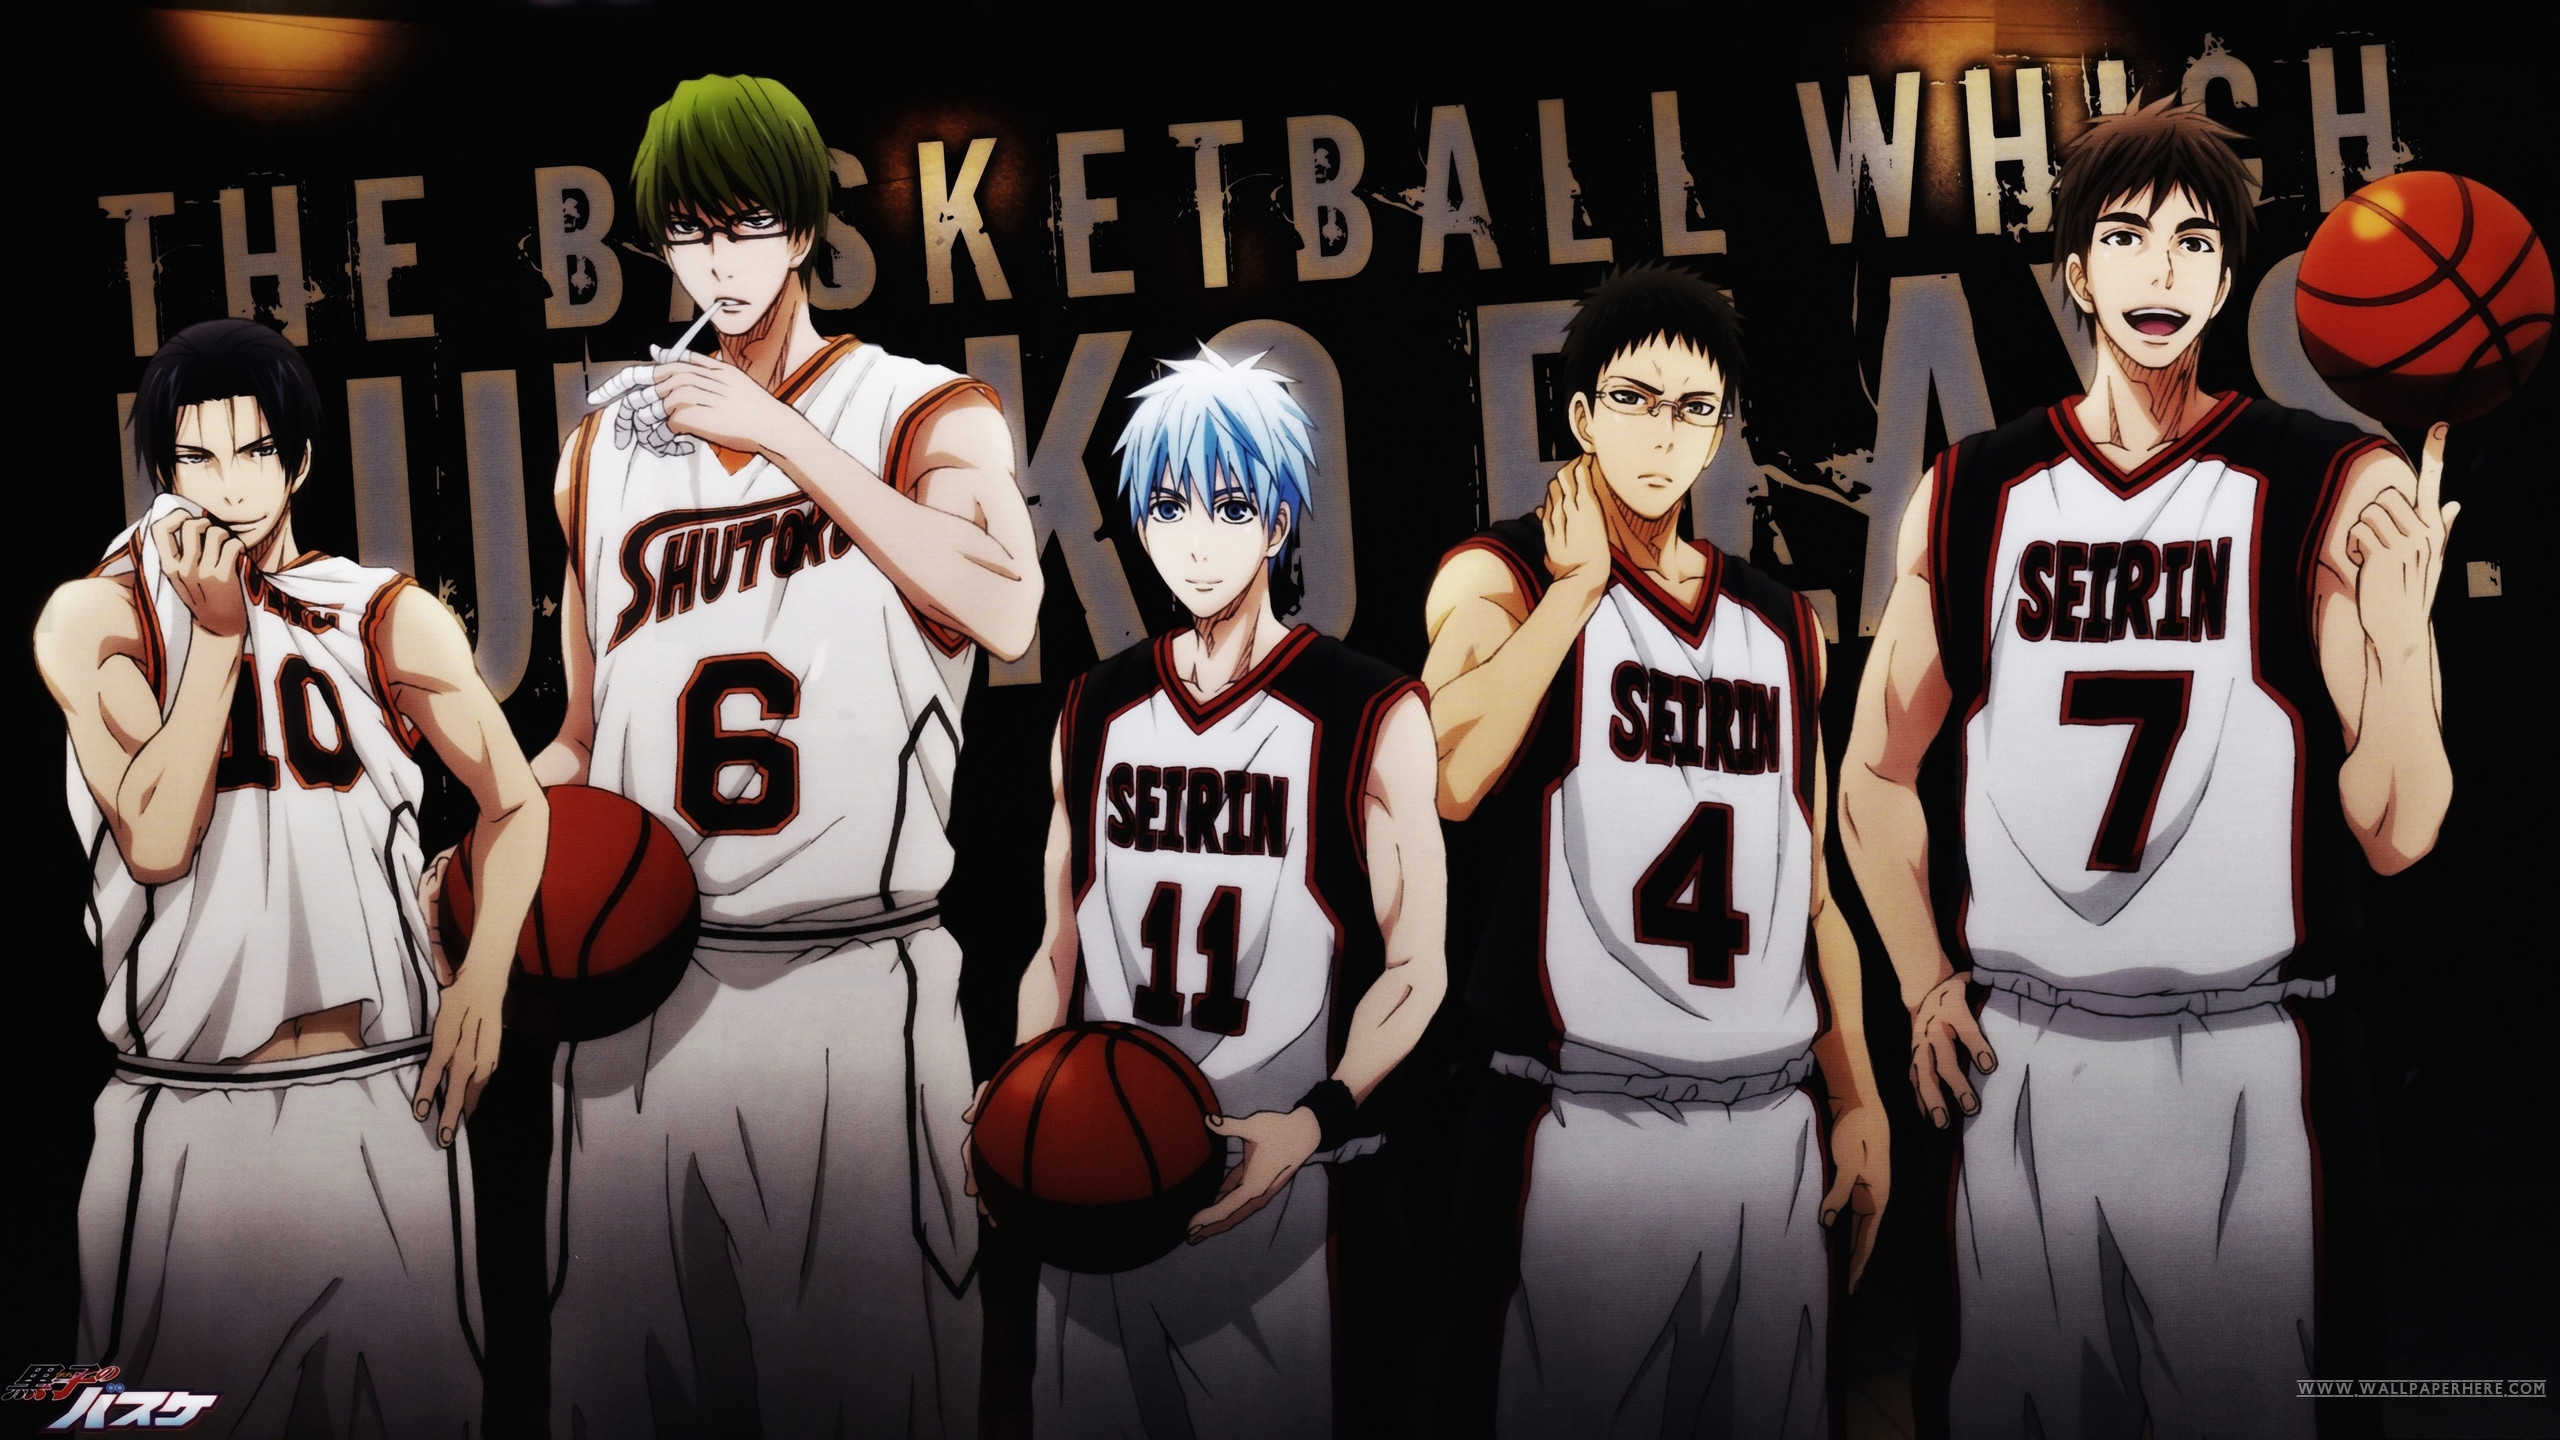 Download mobile wallpaper Anime, Kuroko's Basketball for free.